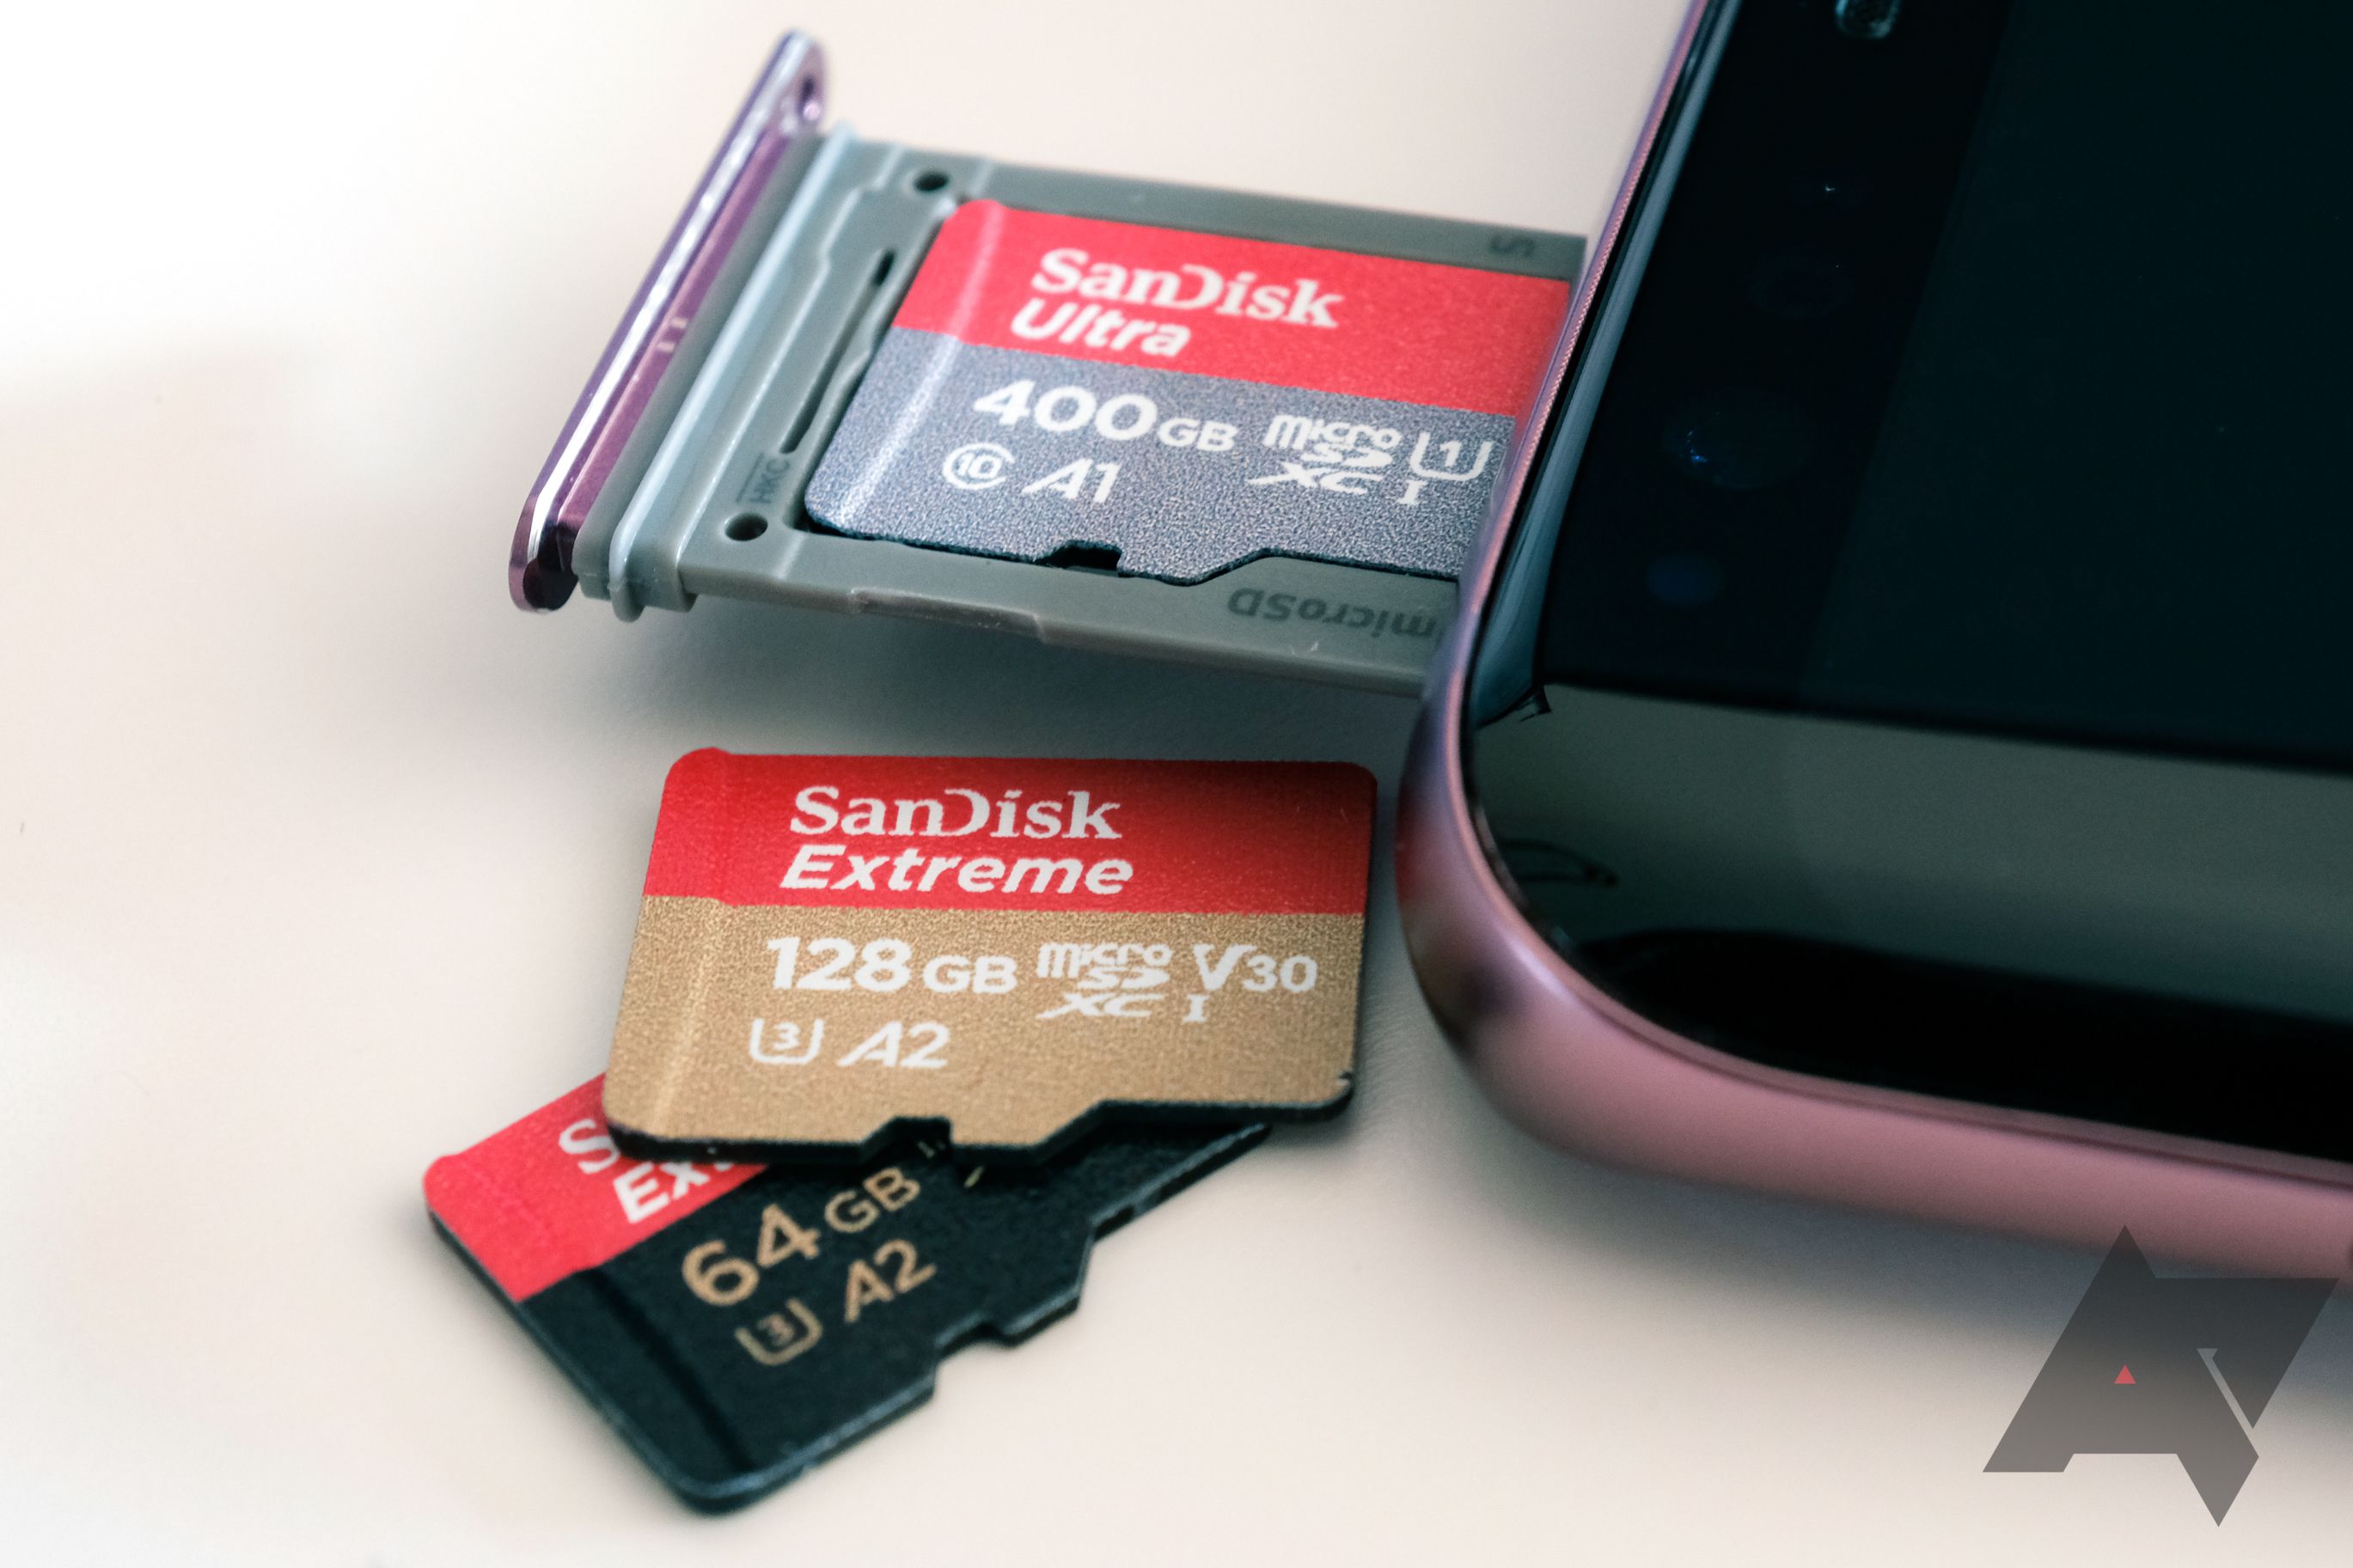 Adicione seu cartão SD ao slot de cartão do seu dispositivo.